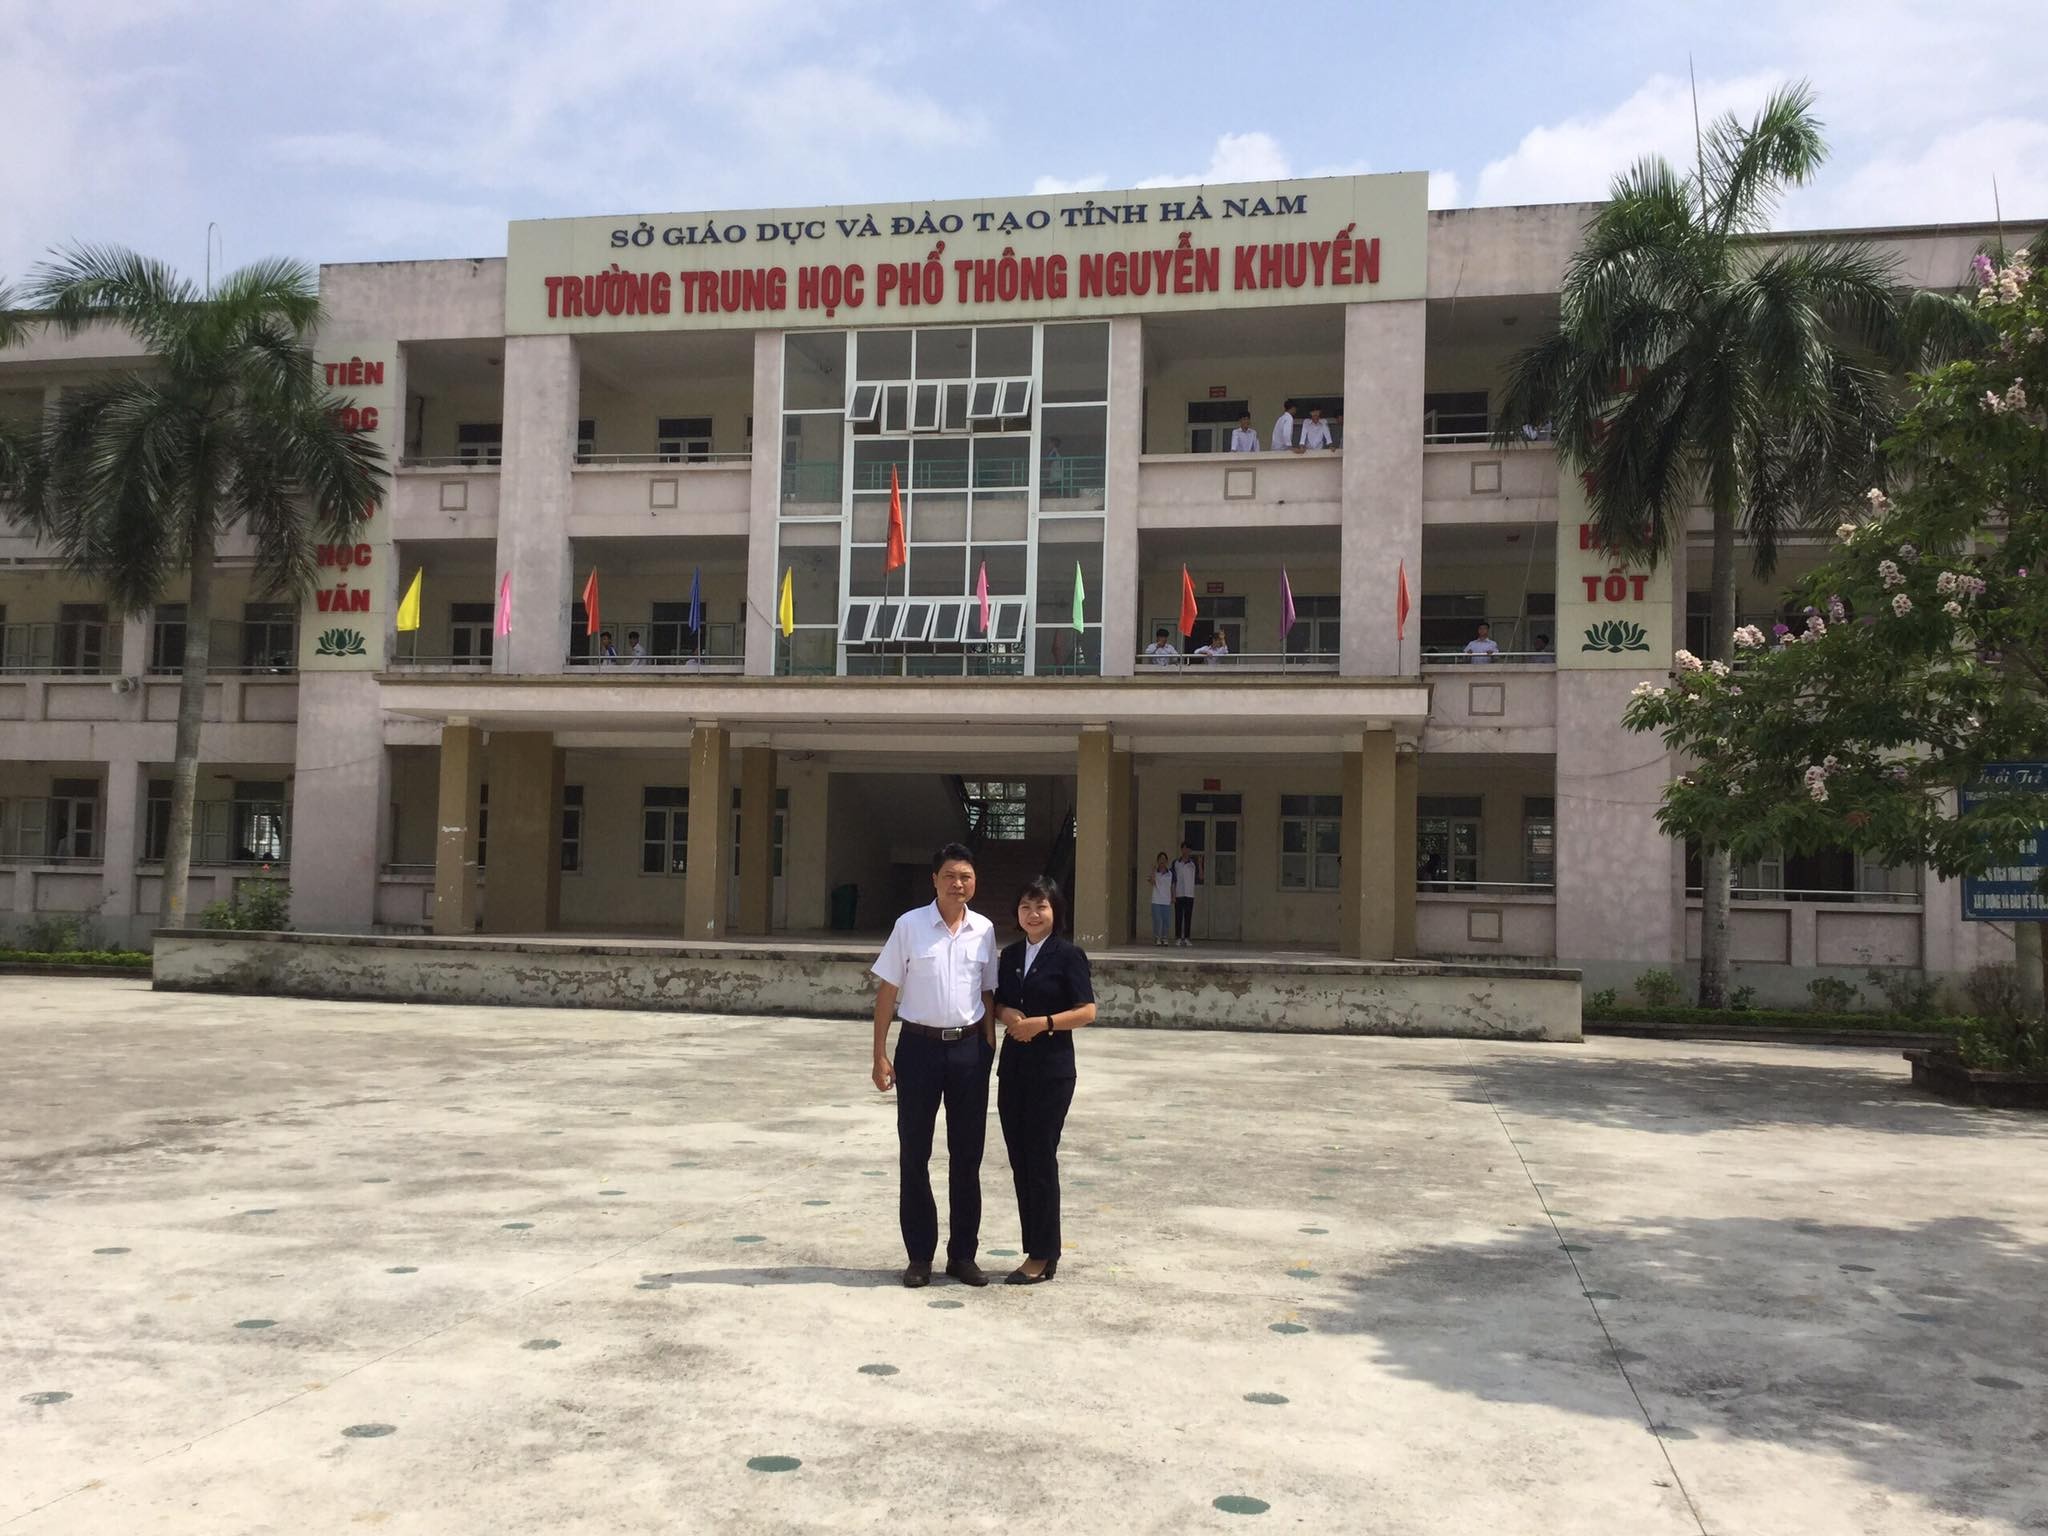 TVNAS chuẩn bị cho buổi tạo đàm hướng nghiệp nghề Hàng không tại Trường THPT Nguyễn Khuyến tỉnh Hà Nam